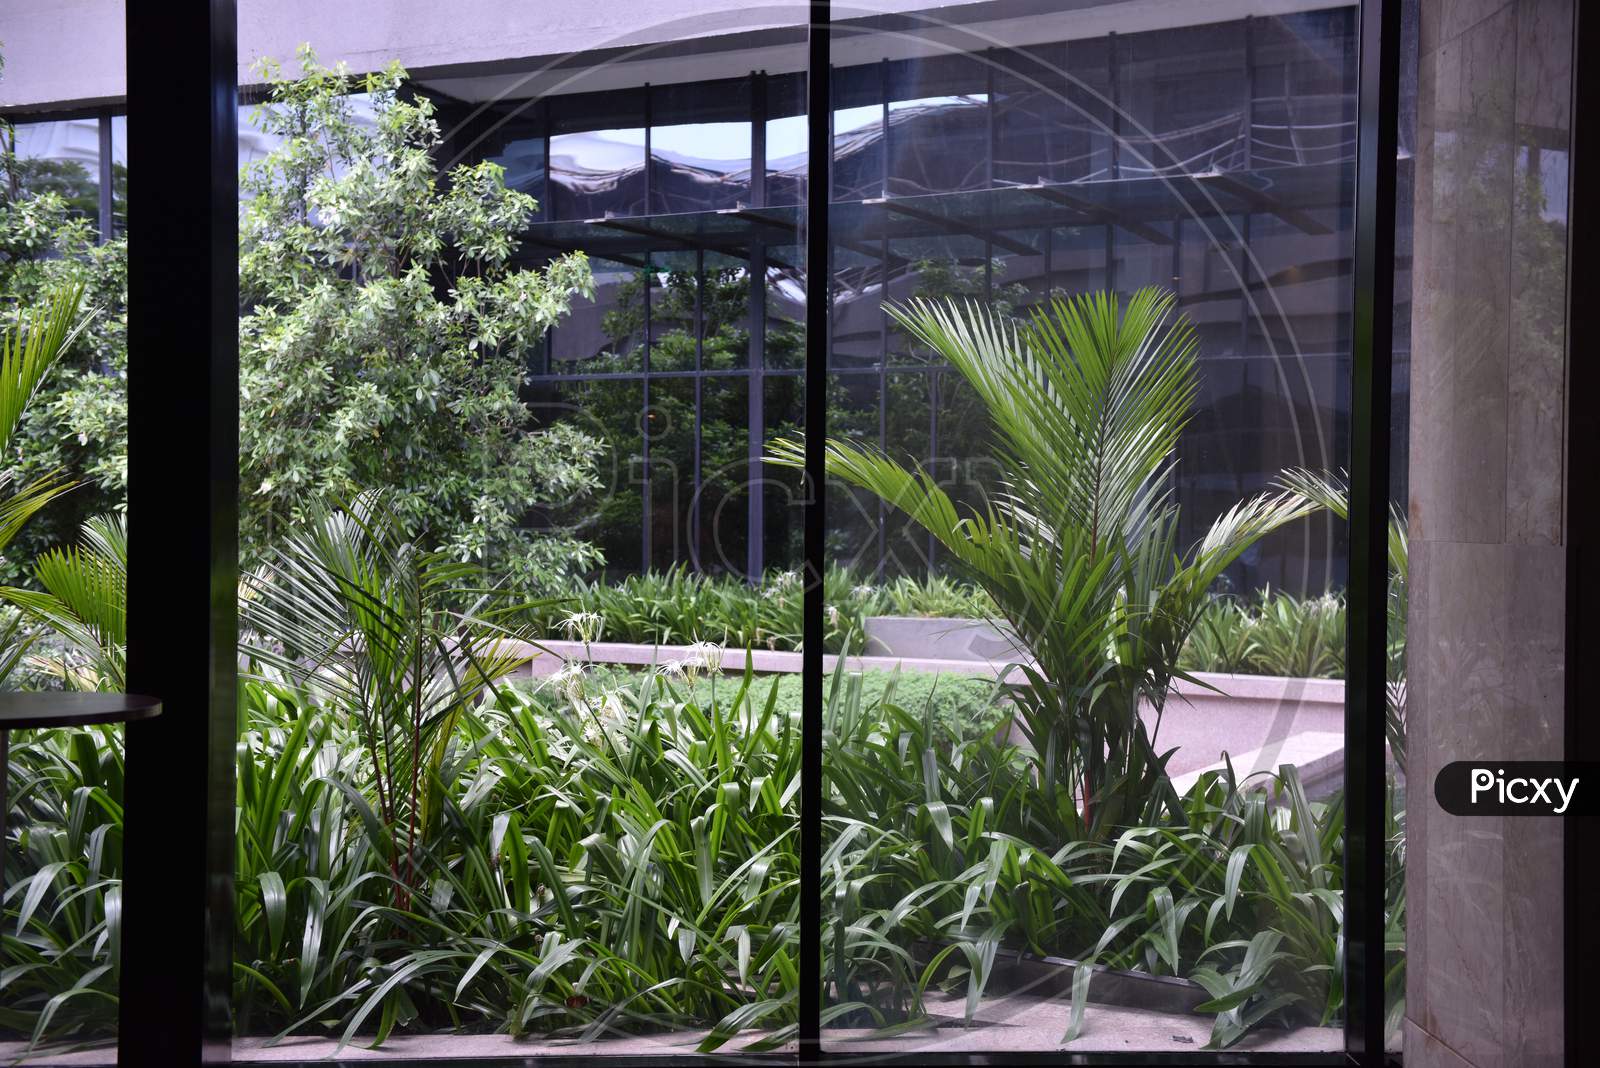 View of indoor plants